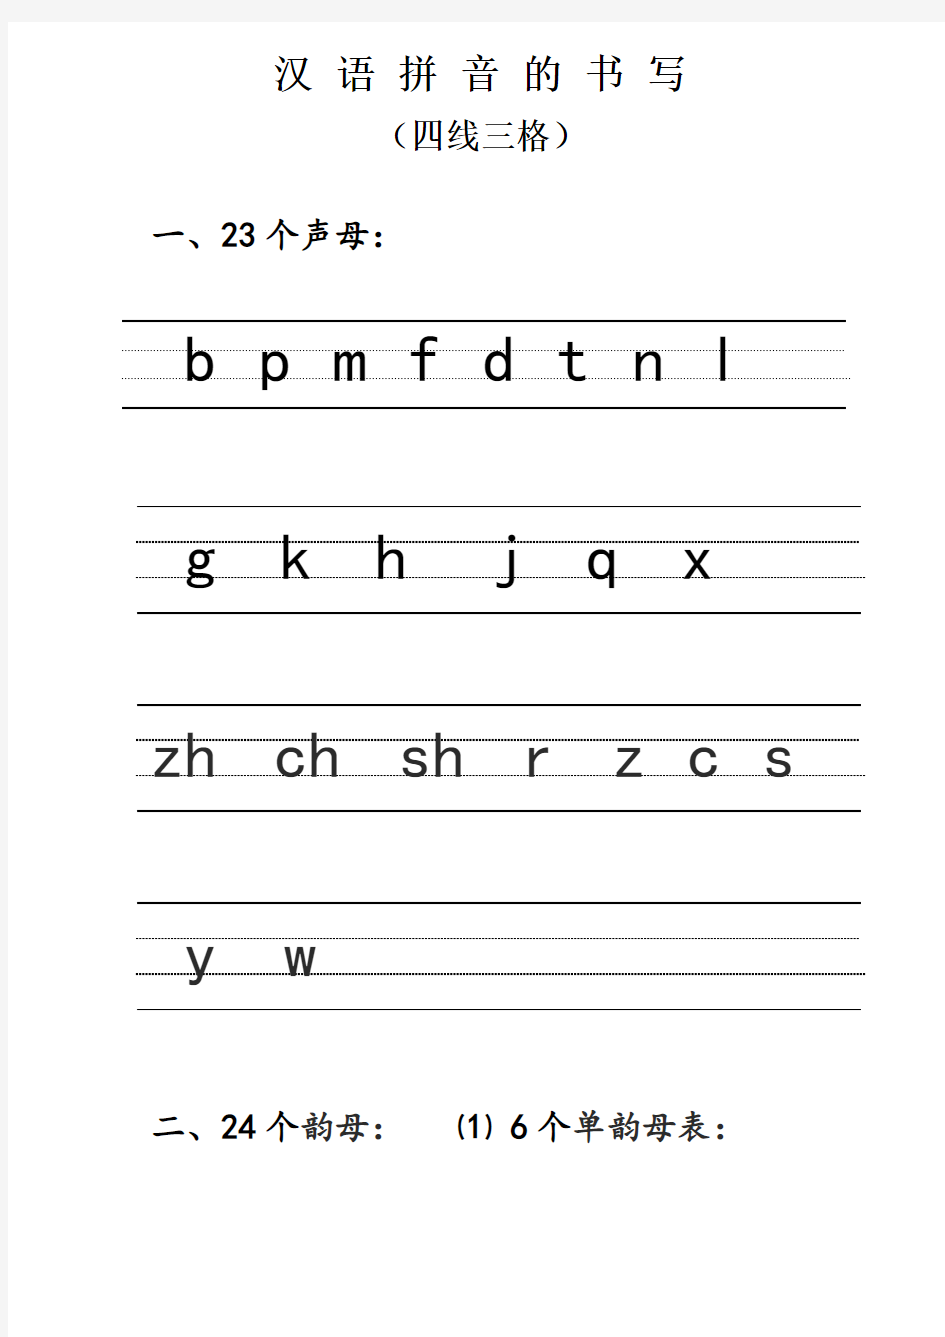 汉语拼音的书写格式_(四线三格)